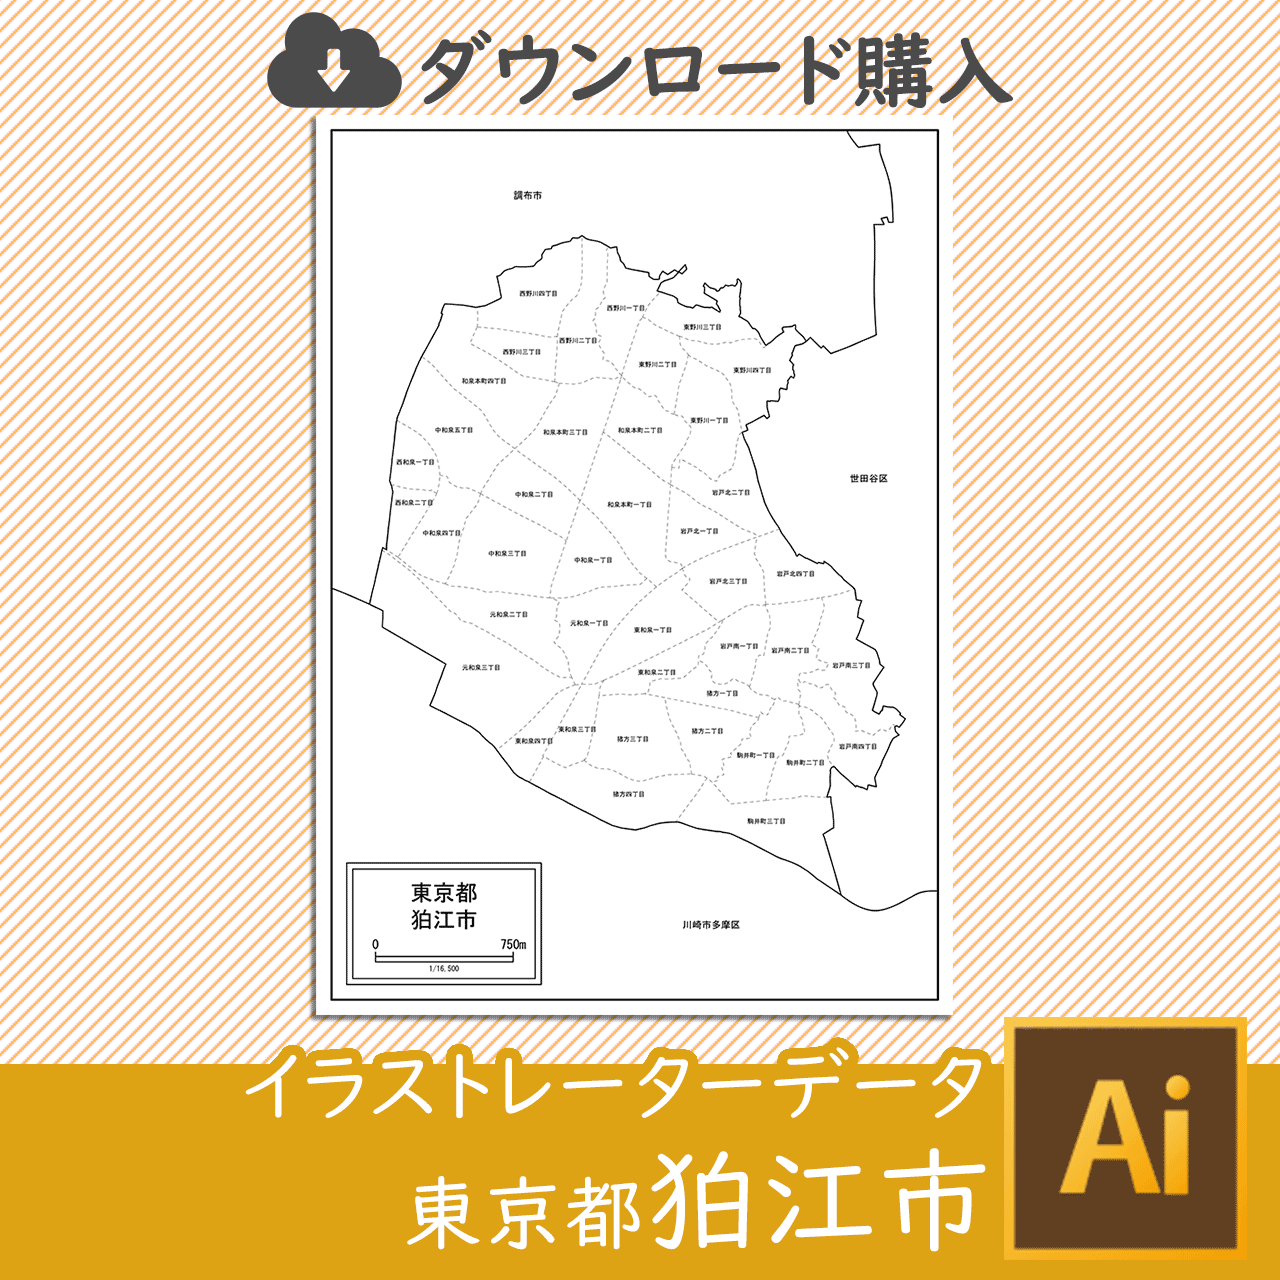 狛江市のaiデータのサムネイル画像